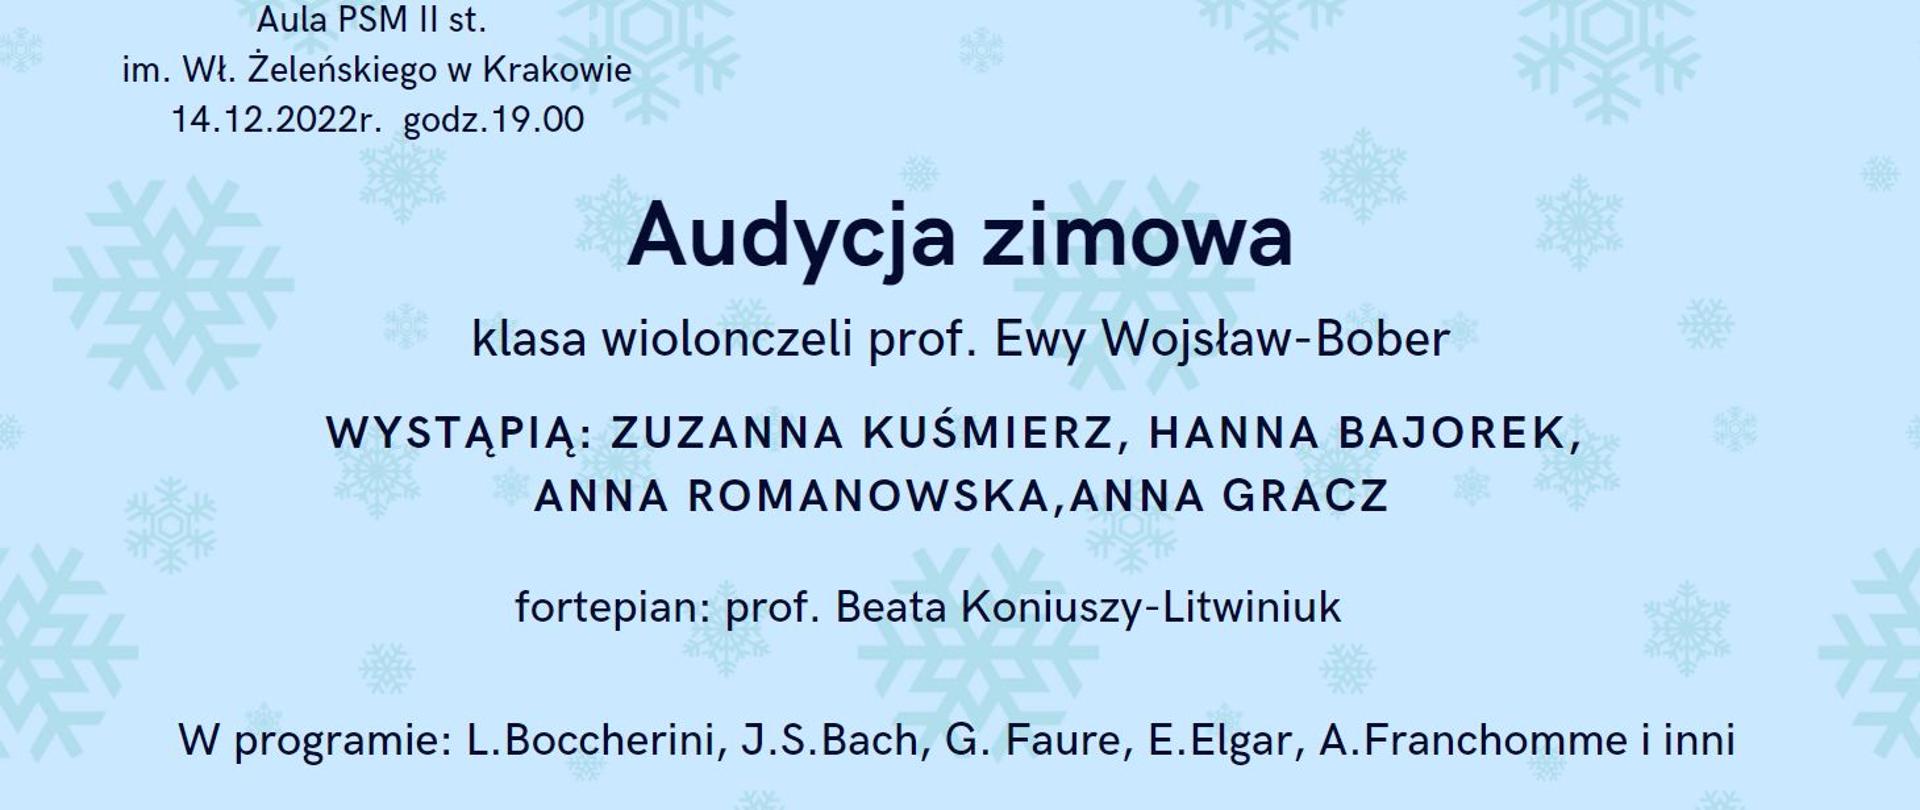 na niebieskim tle z gwiazdkami napis audycja zimowa klasy wiolonczeli Ewy Wojsław-Bober w dniu 14.12.2022